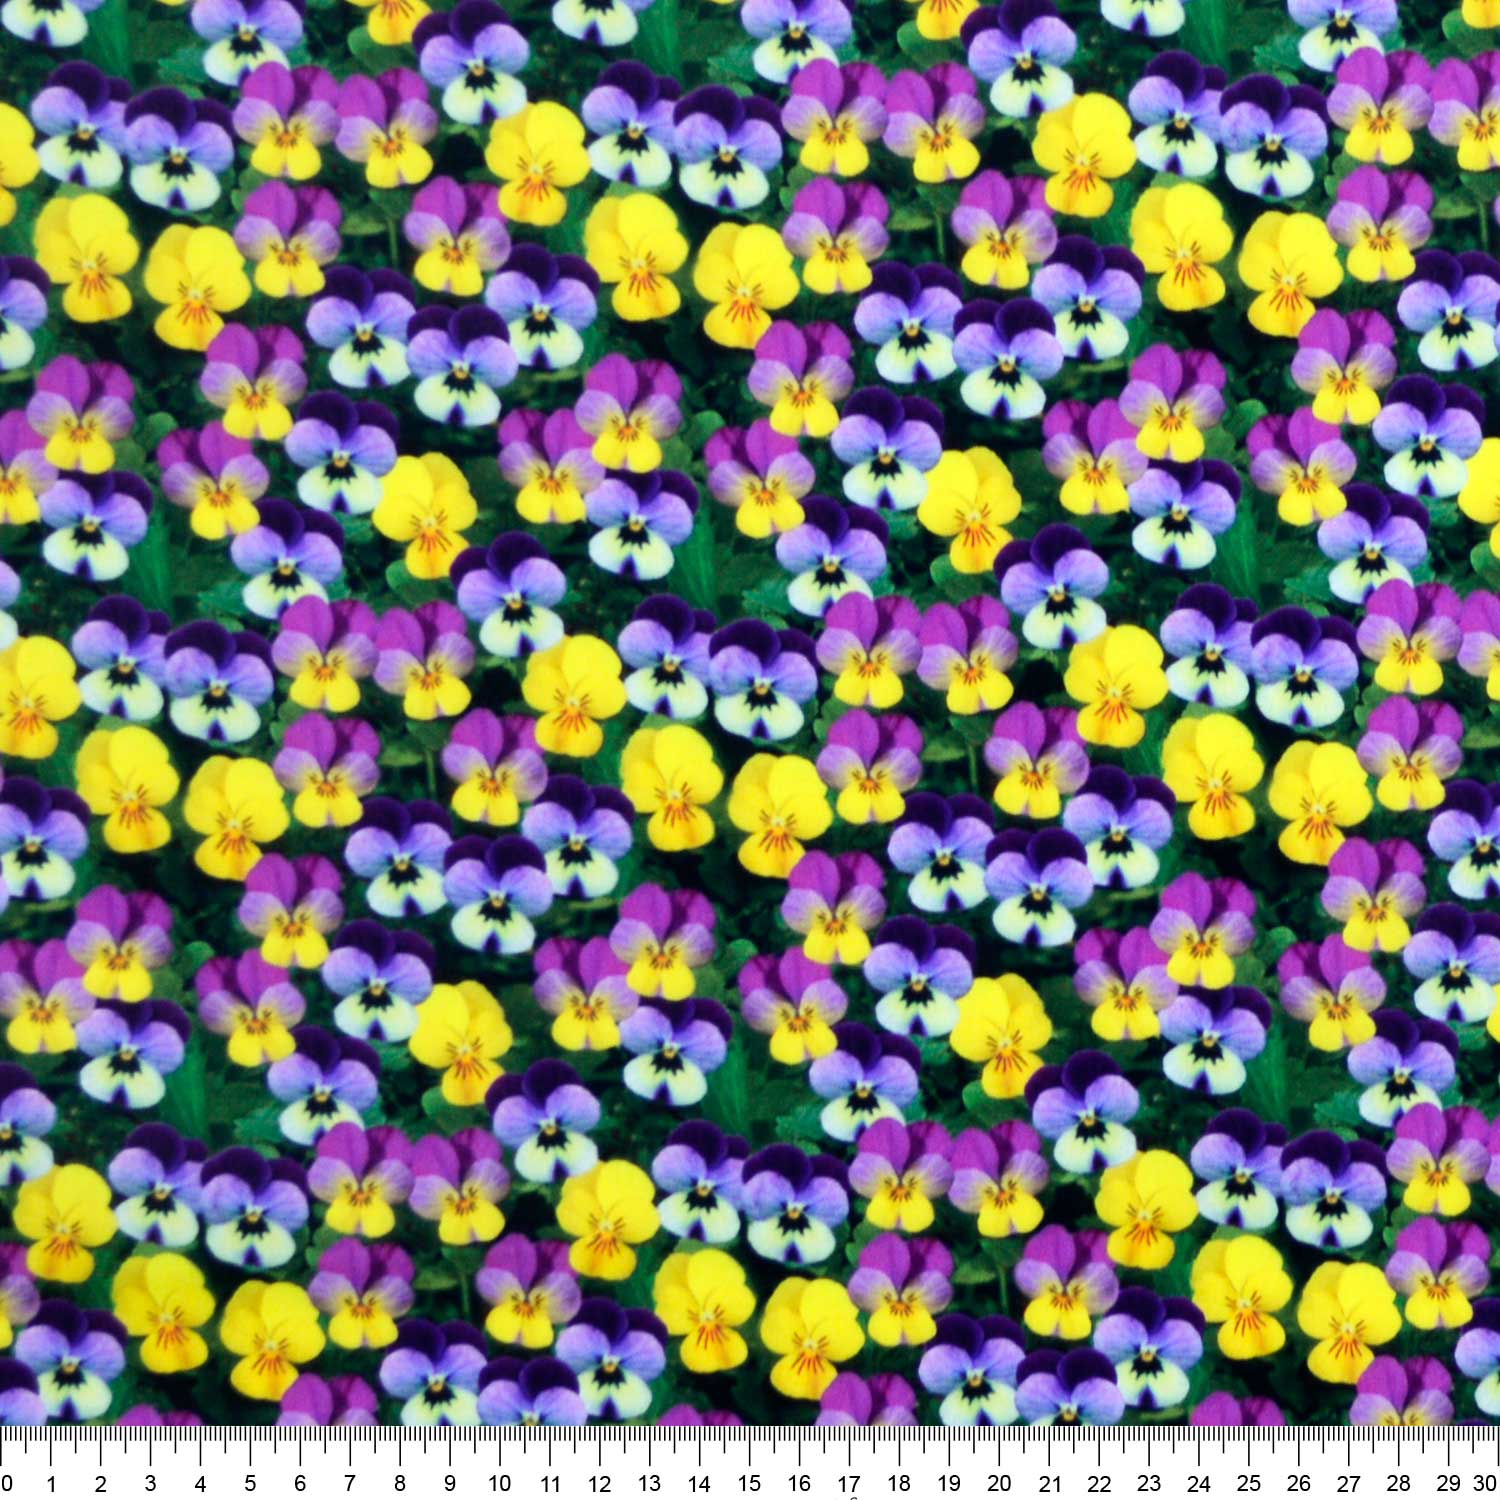 tecido-tricoline-estampado-digital-3d-floral-amor-perfeito-della-aviamentos-tecidos-caldeira-capa-r-